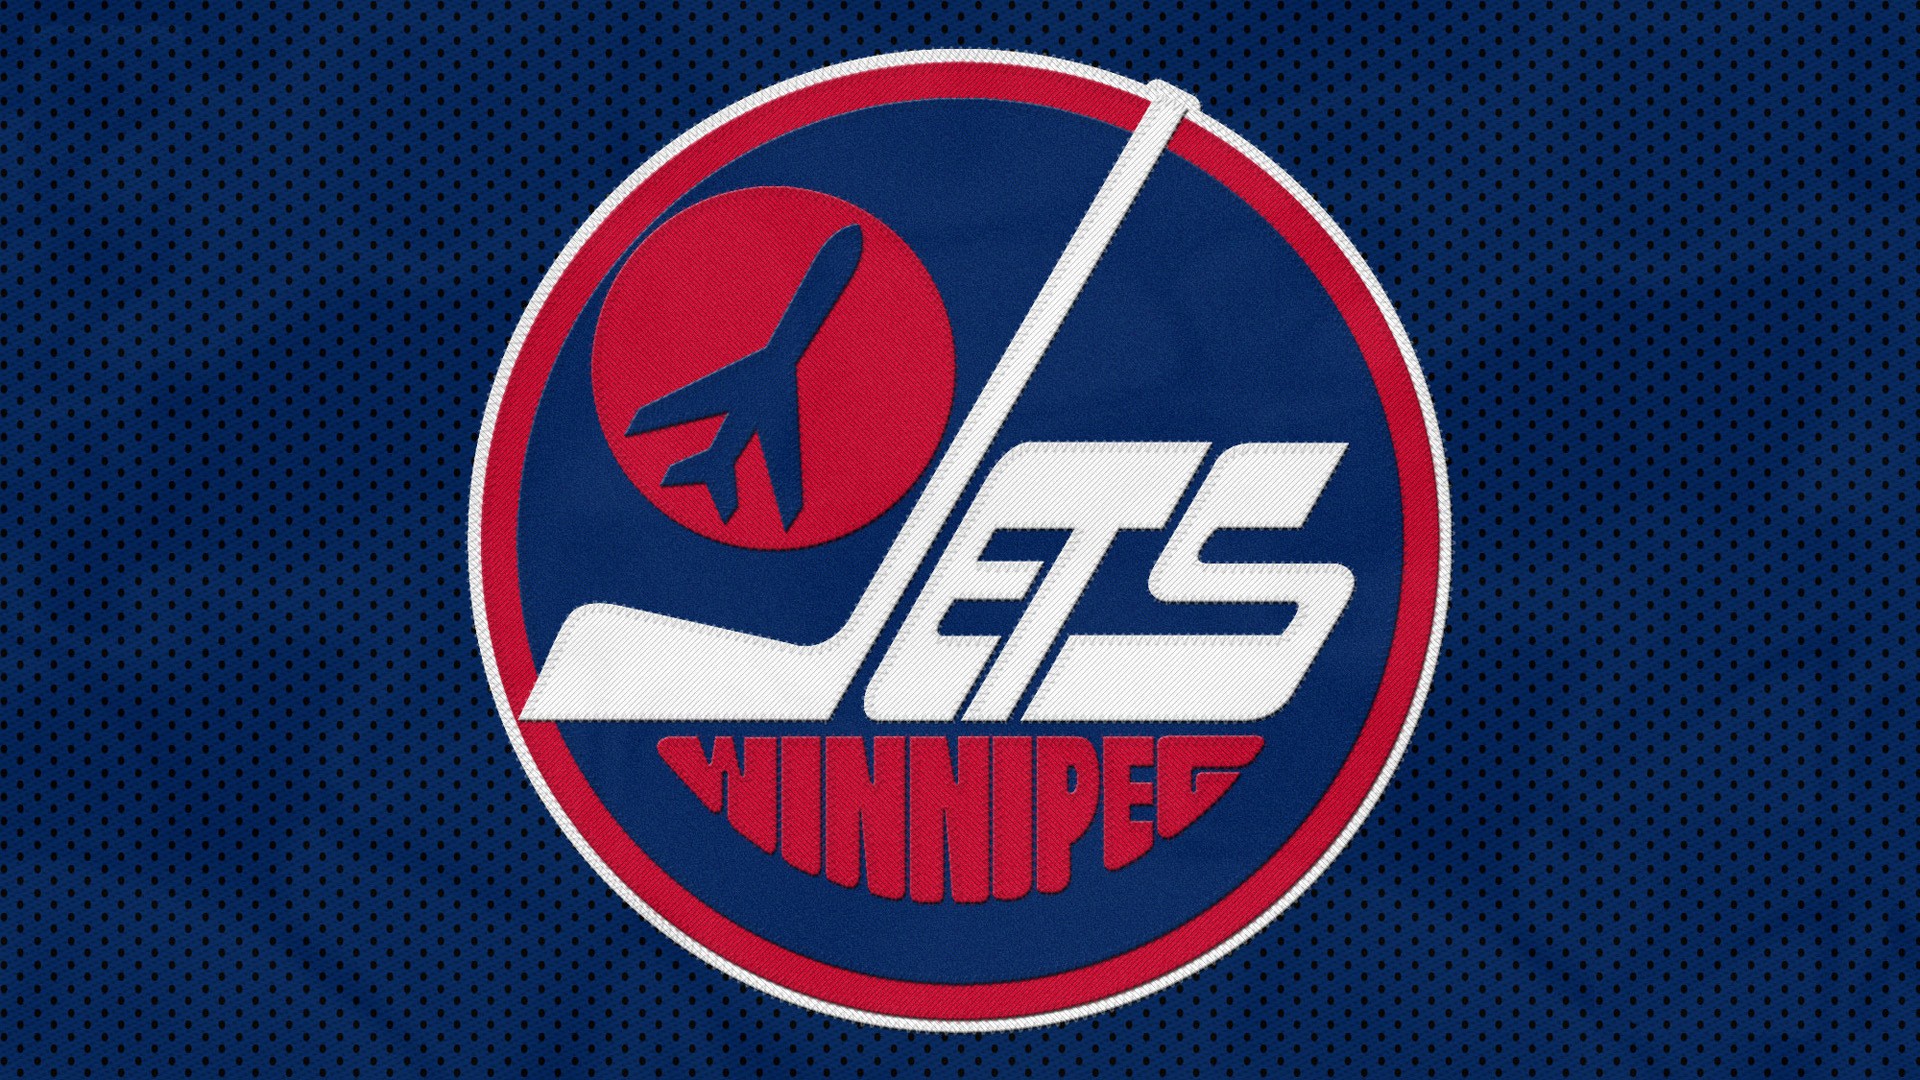 Die besten Winnipeg Jets-Hintergründe für den Telefonbildschirm